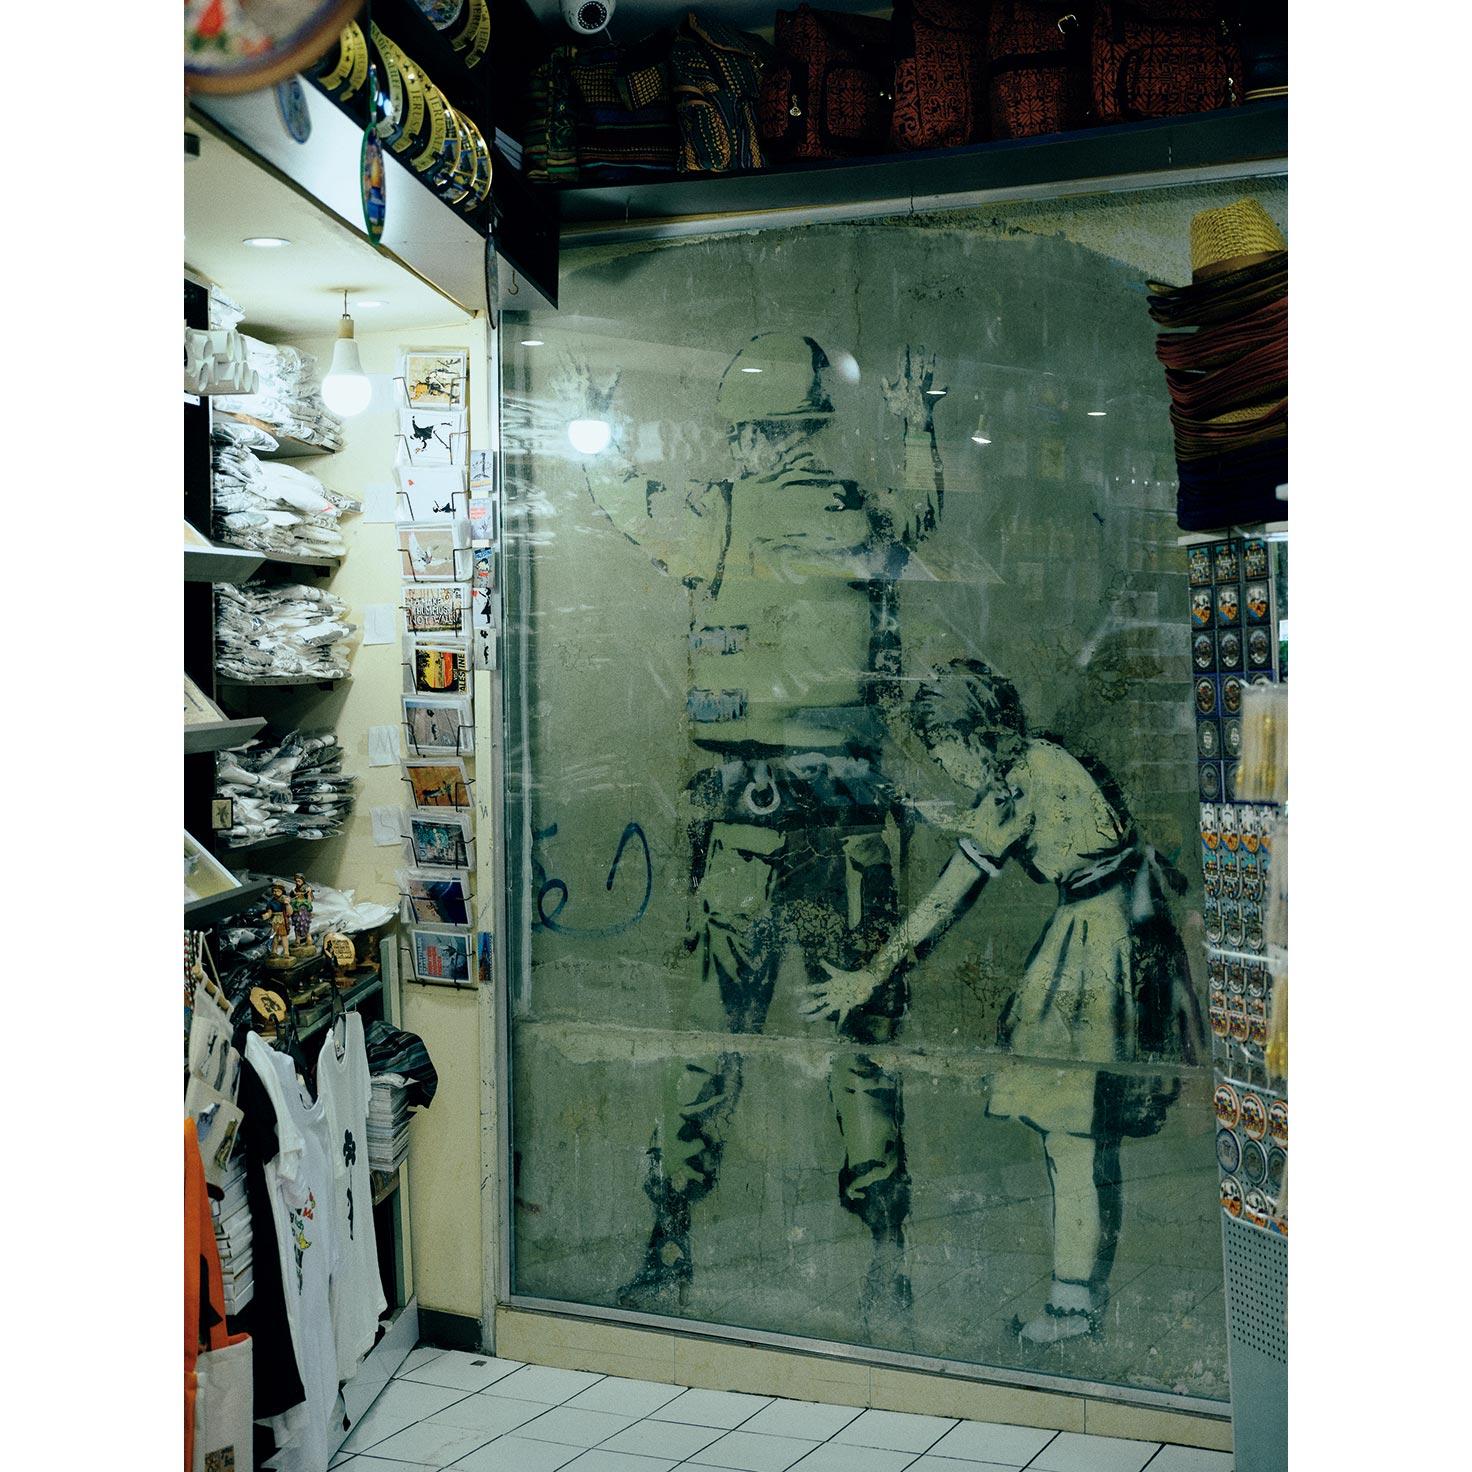 Girl Frisking Soldier(2005)　土産物屋の店内にある作品。バンクシー作品を見学する旅行者が後を絶たないことから、壁を取り込む形で土産物屋がオープン。作品を見学するためには土産物屋に入店する必要があり、入ると商品を勧められる。●Hebron Rd沿いの〈BANKSY SHOP〉という土産物屋内。

